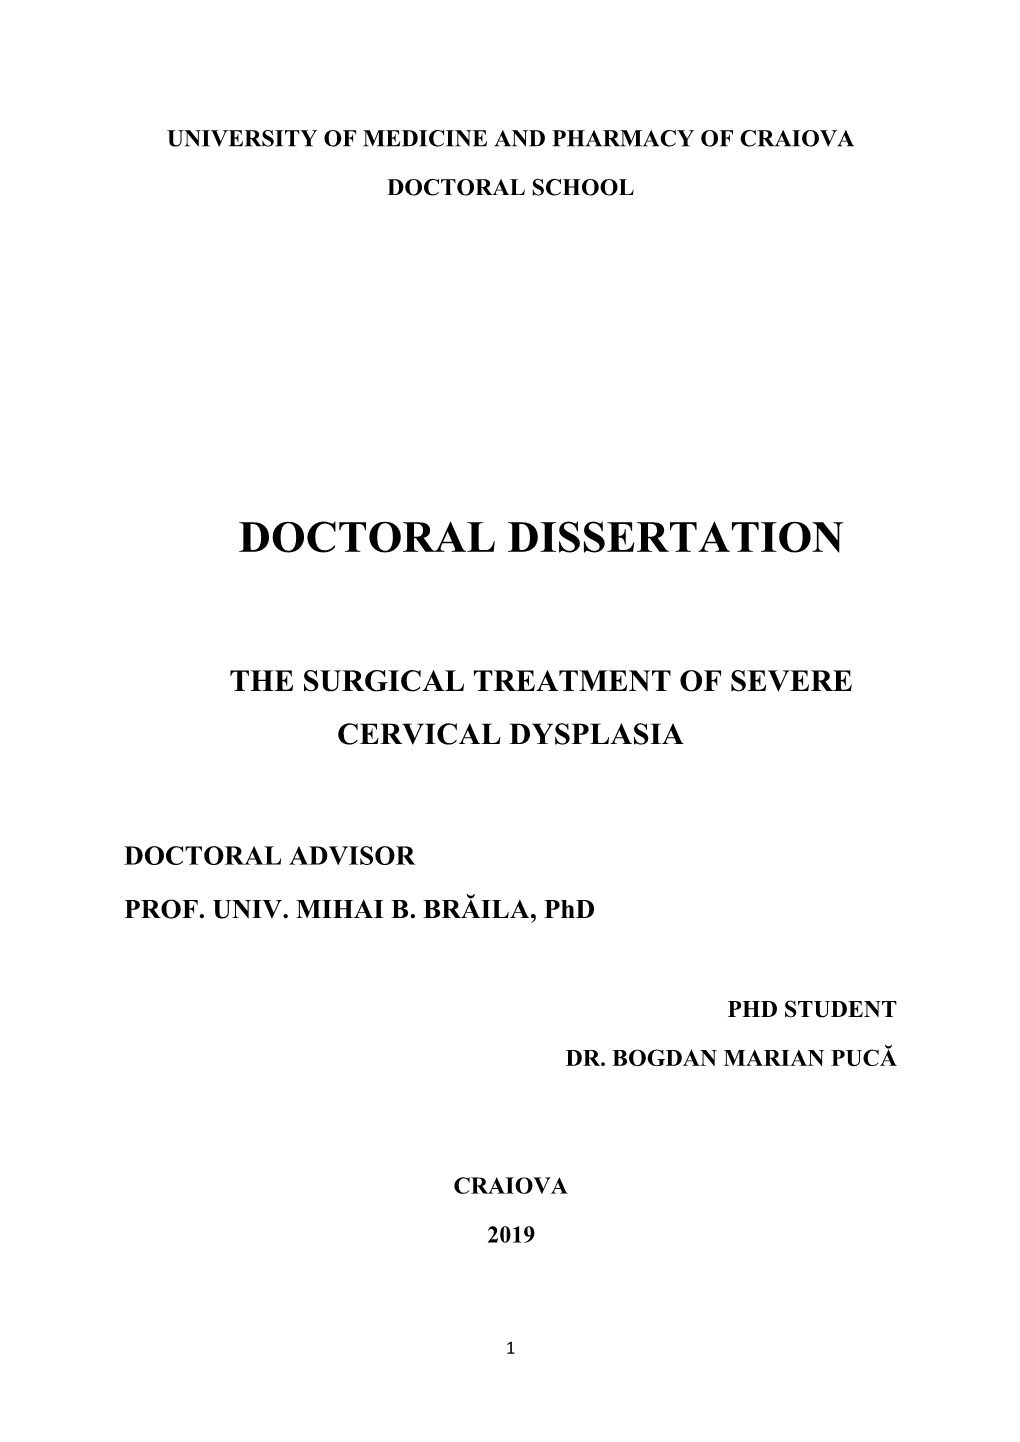 Doctoral Dissertation